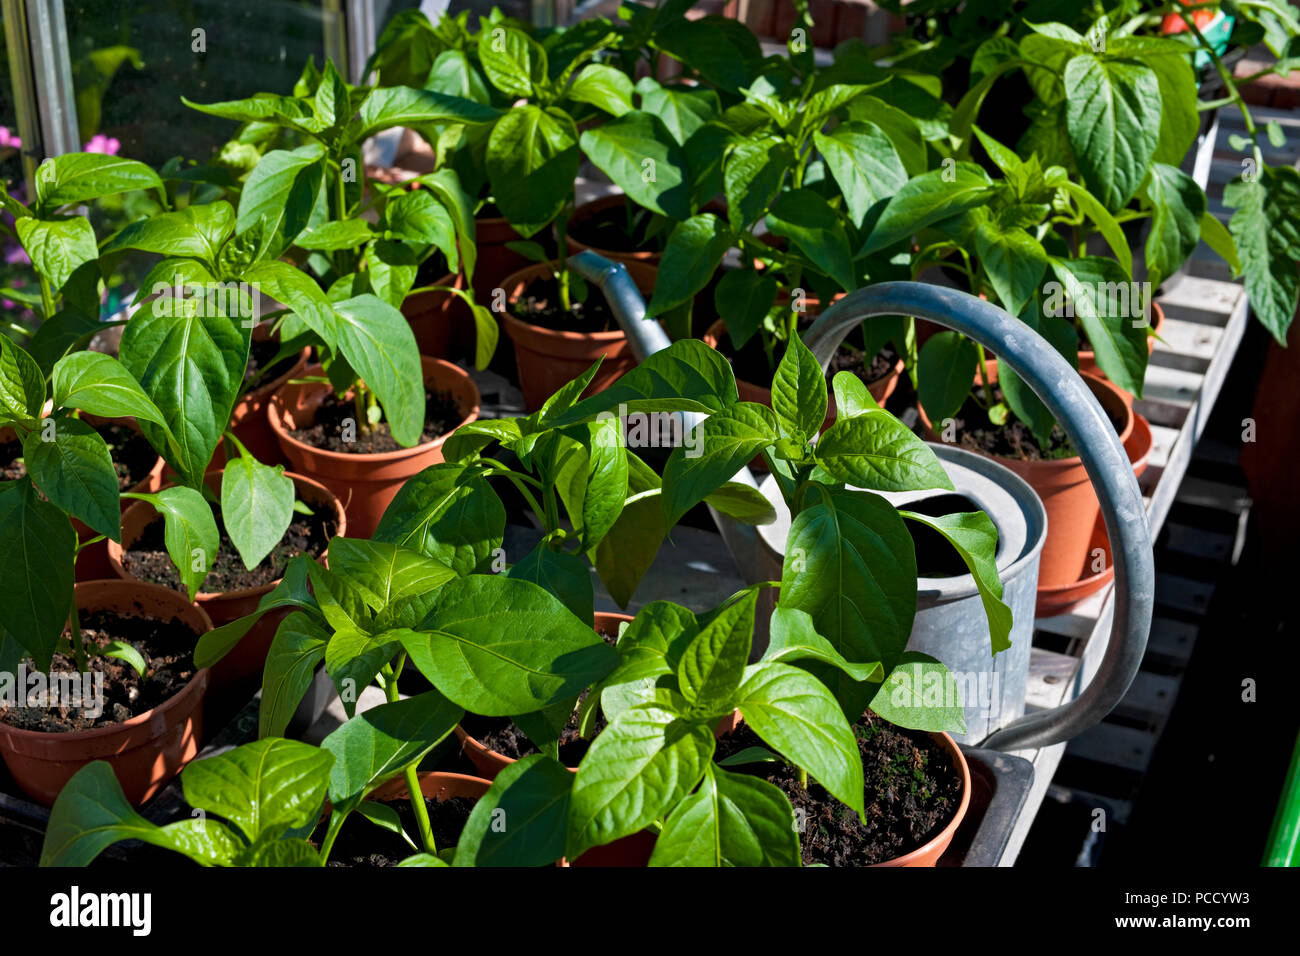 Des pots de poivrons doux verts végétaux poussent en serre en été Angleterre Royaume-Uni Grande-Bretagne GB Grande-Bretagne Banque D'Images